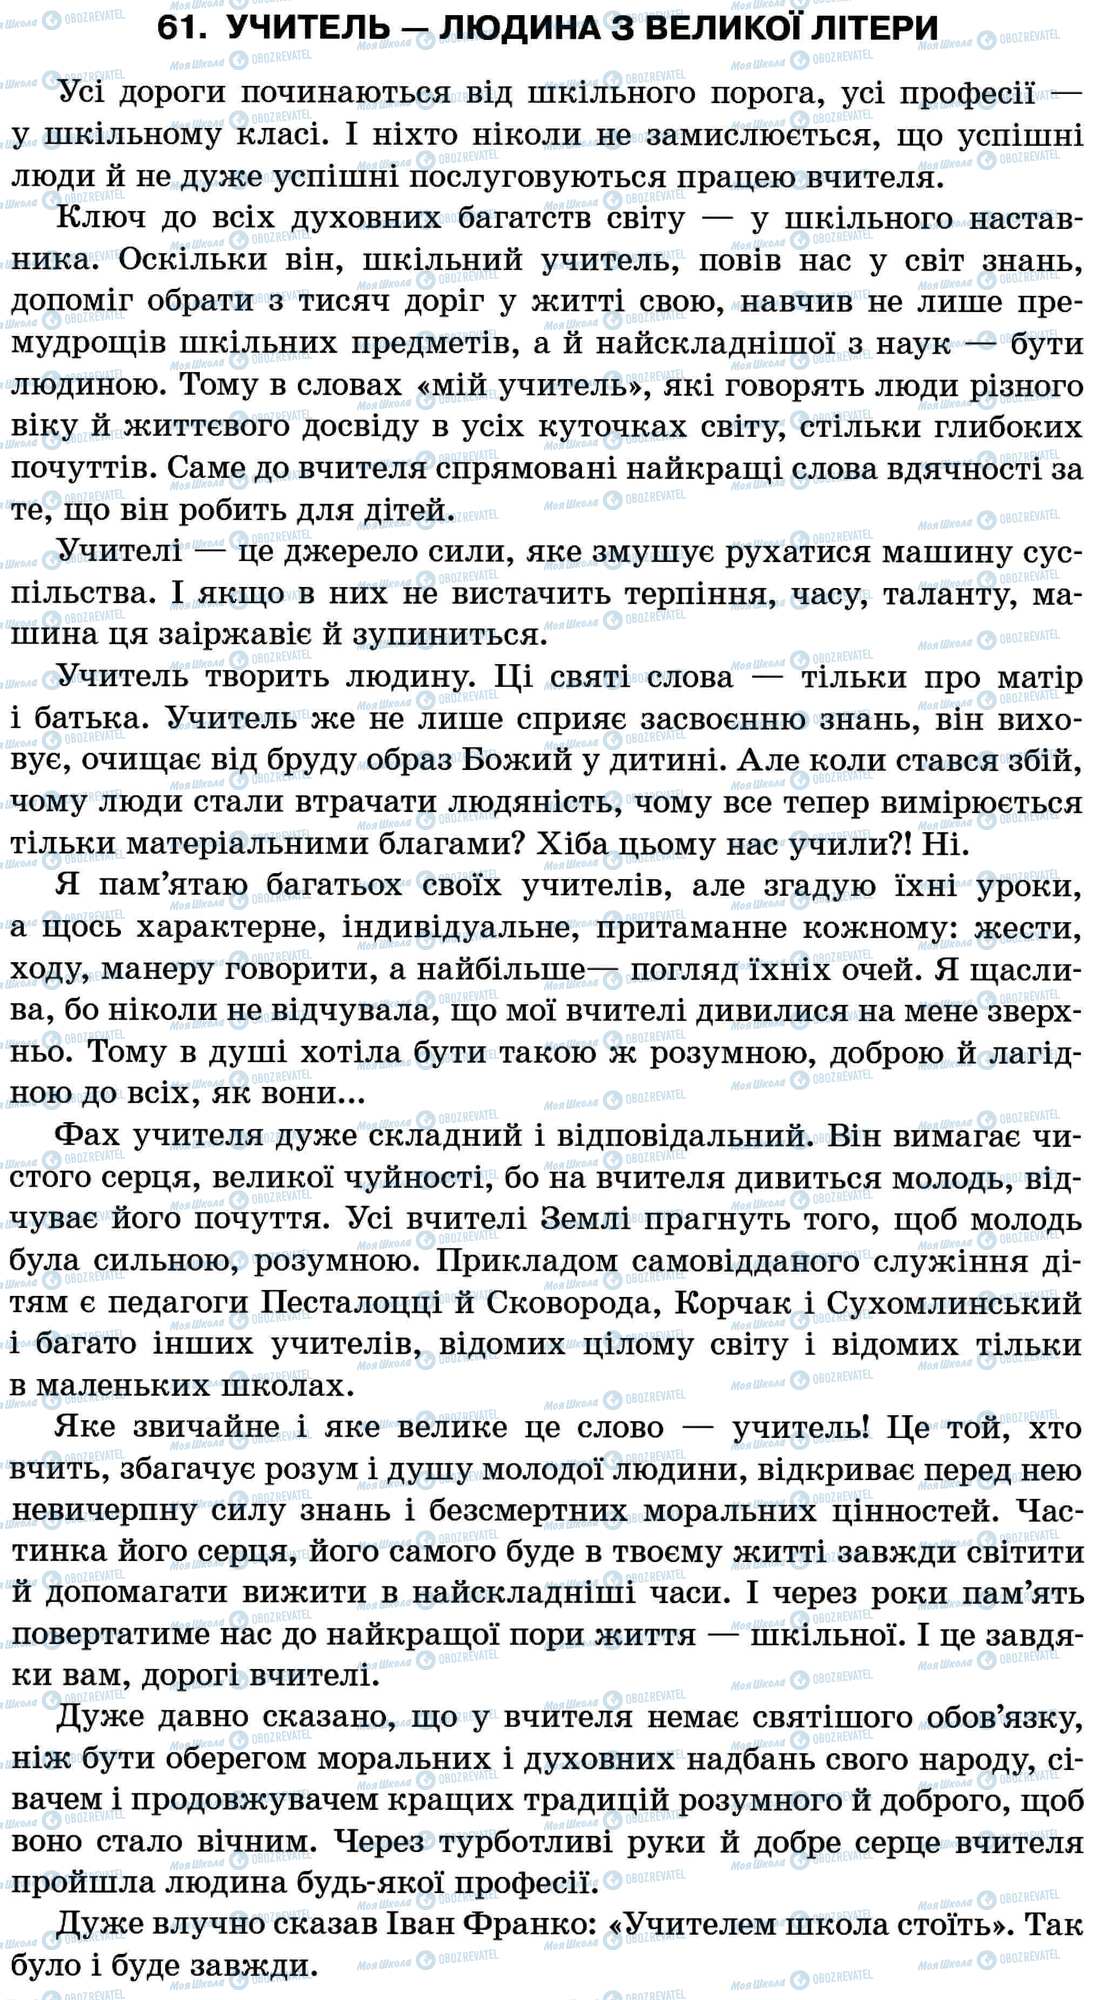 ДПА Українська мова 11 клас сторінка 61. Учитель — людина з великої літери